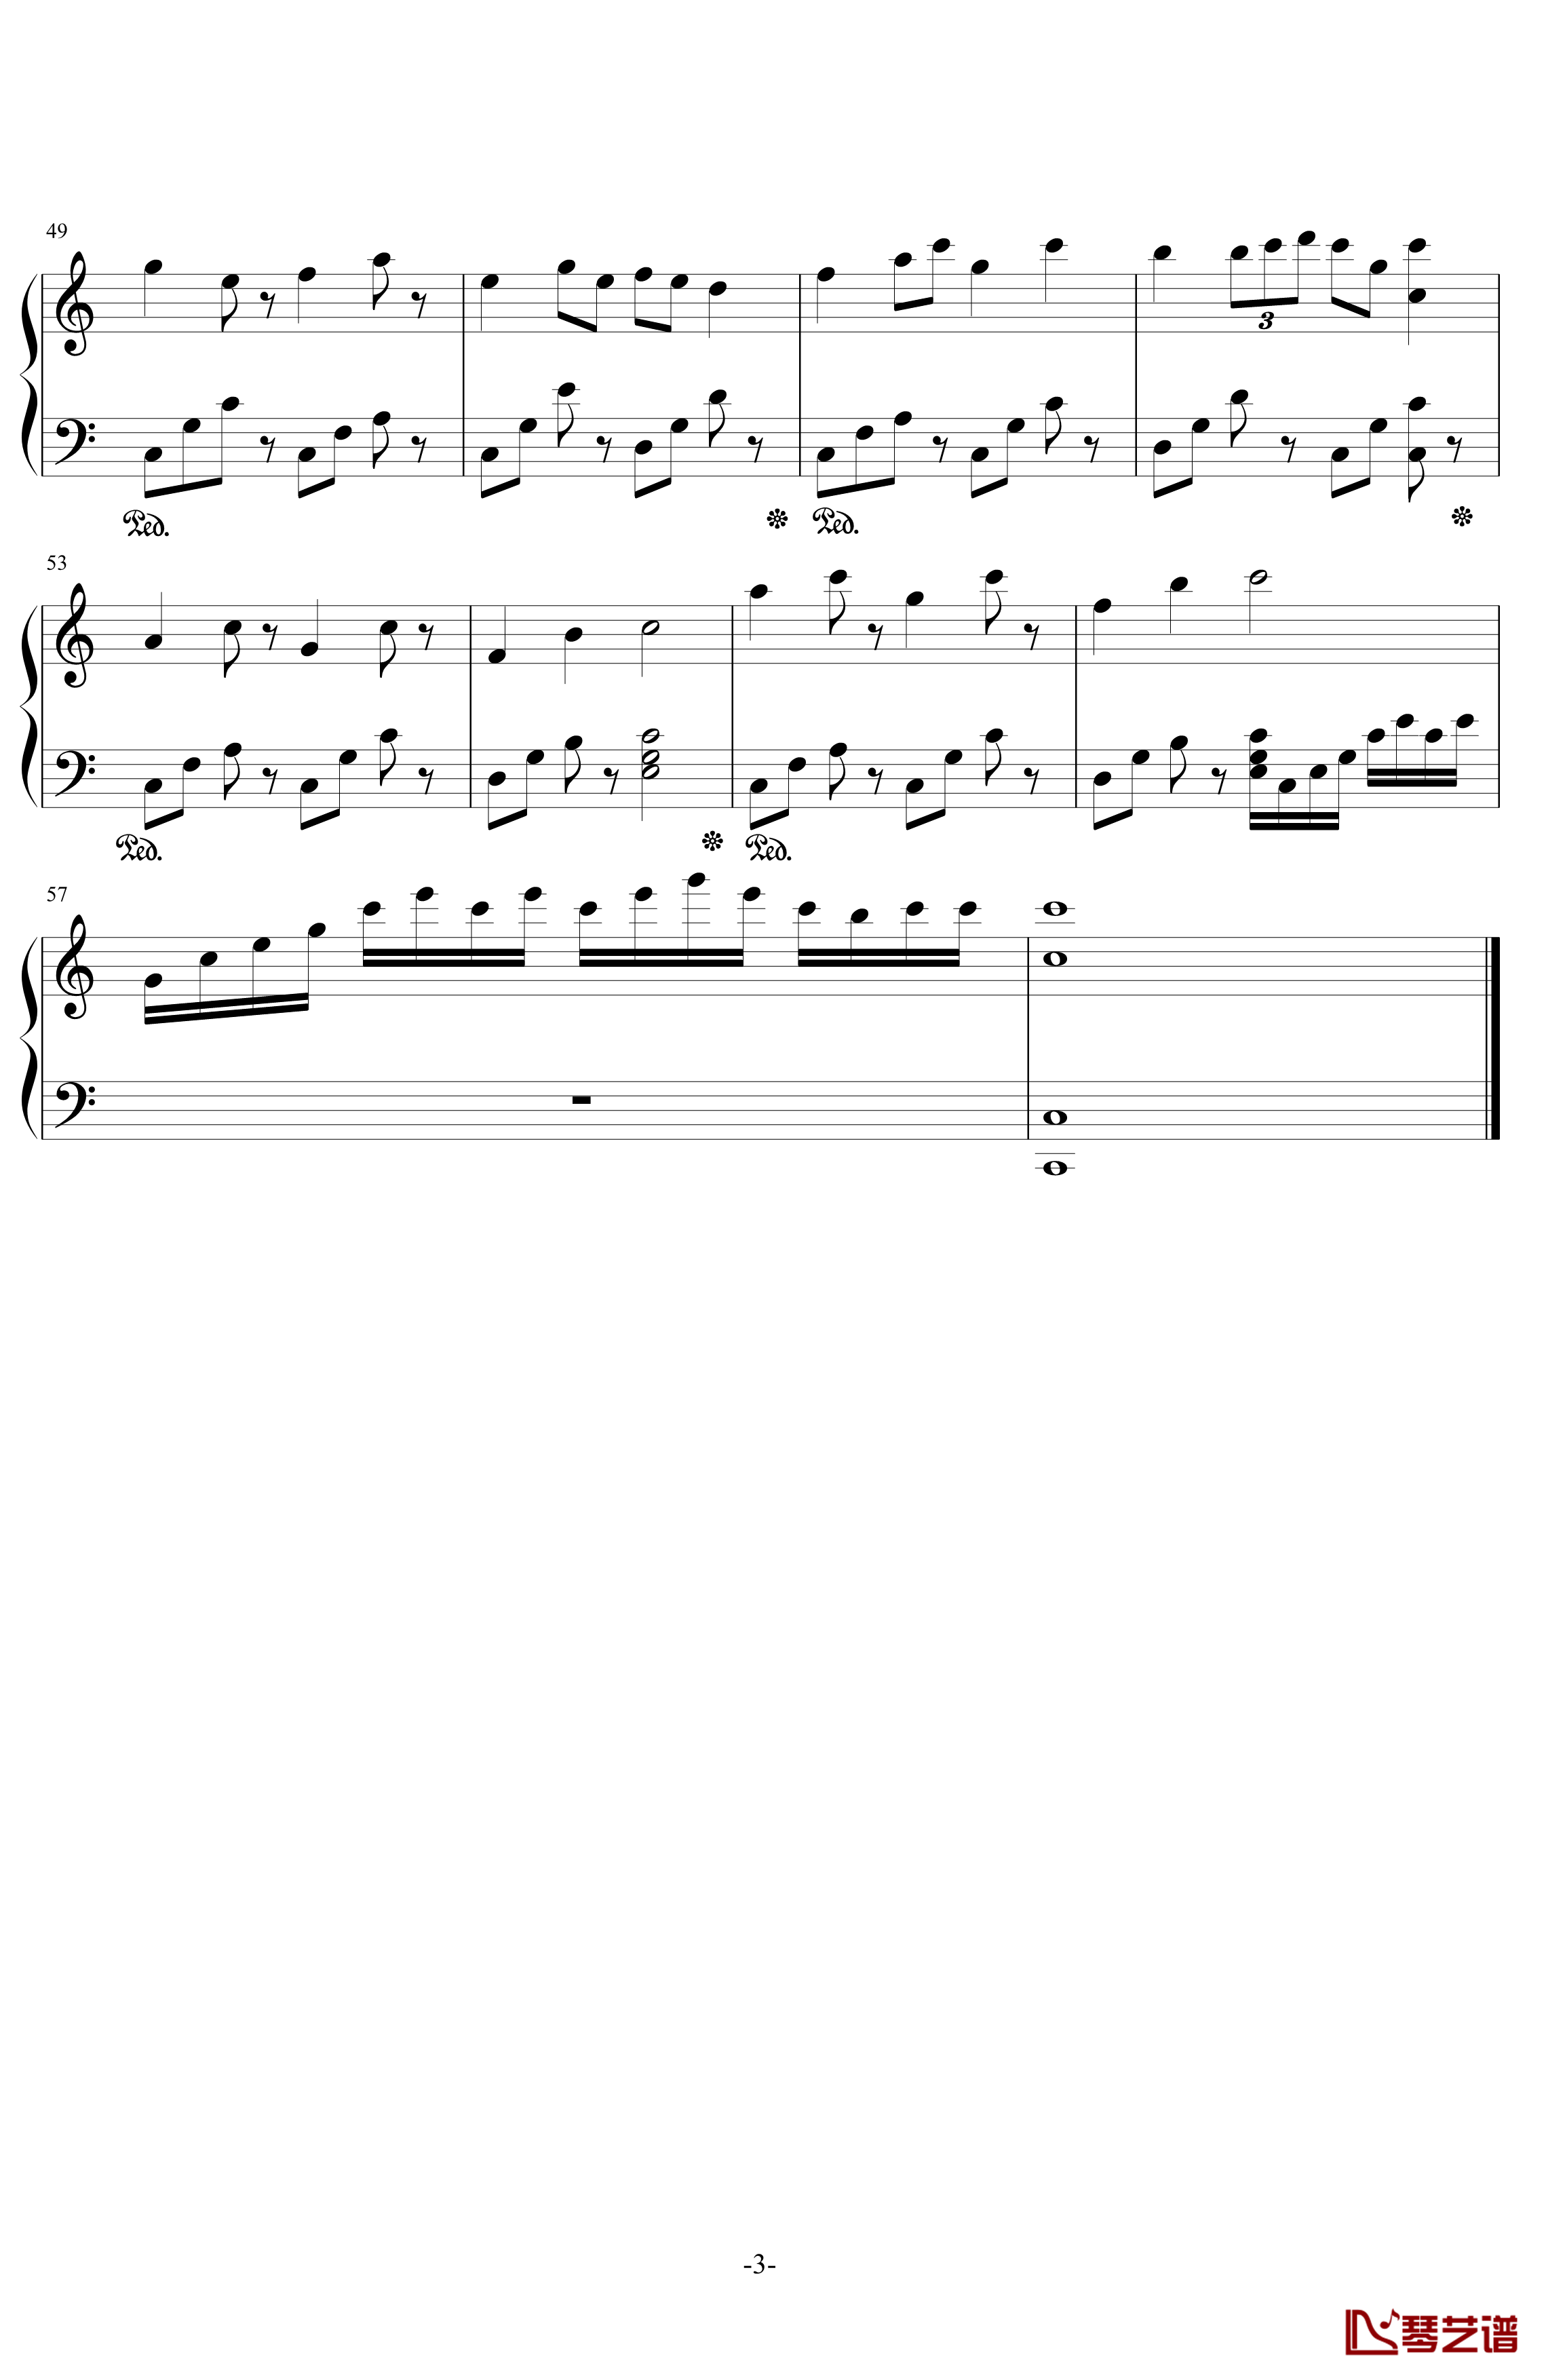 变幻奏鸣曲钢琴谱-dalixin7533